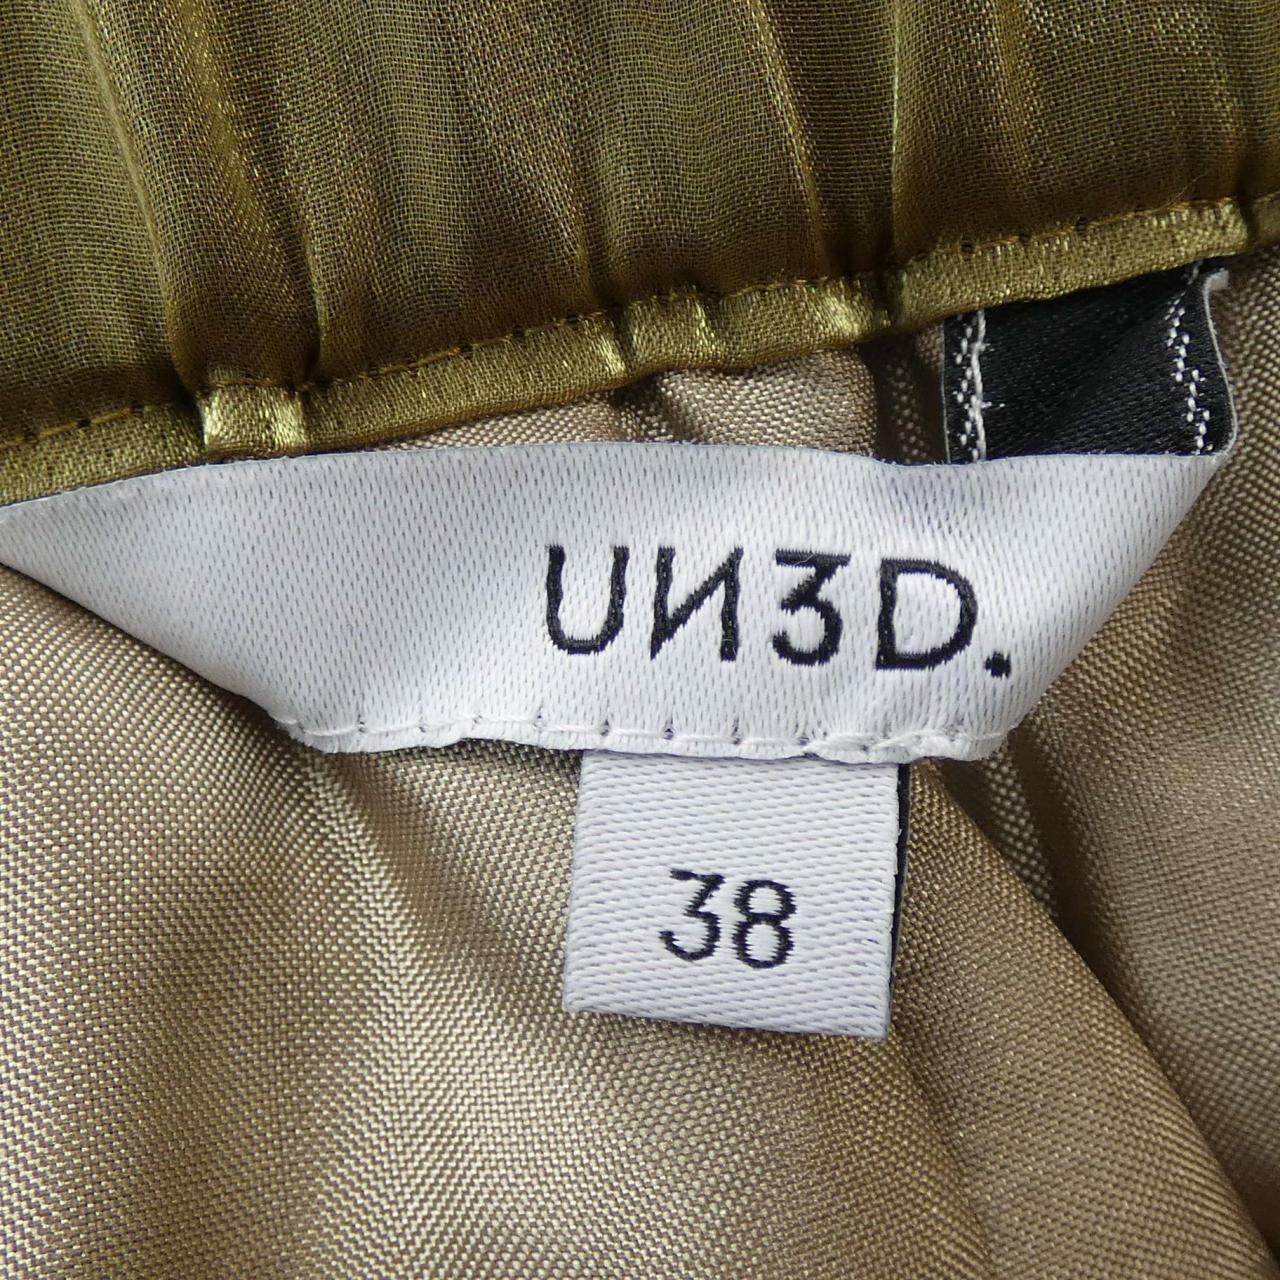 无领UN3D裤